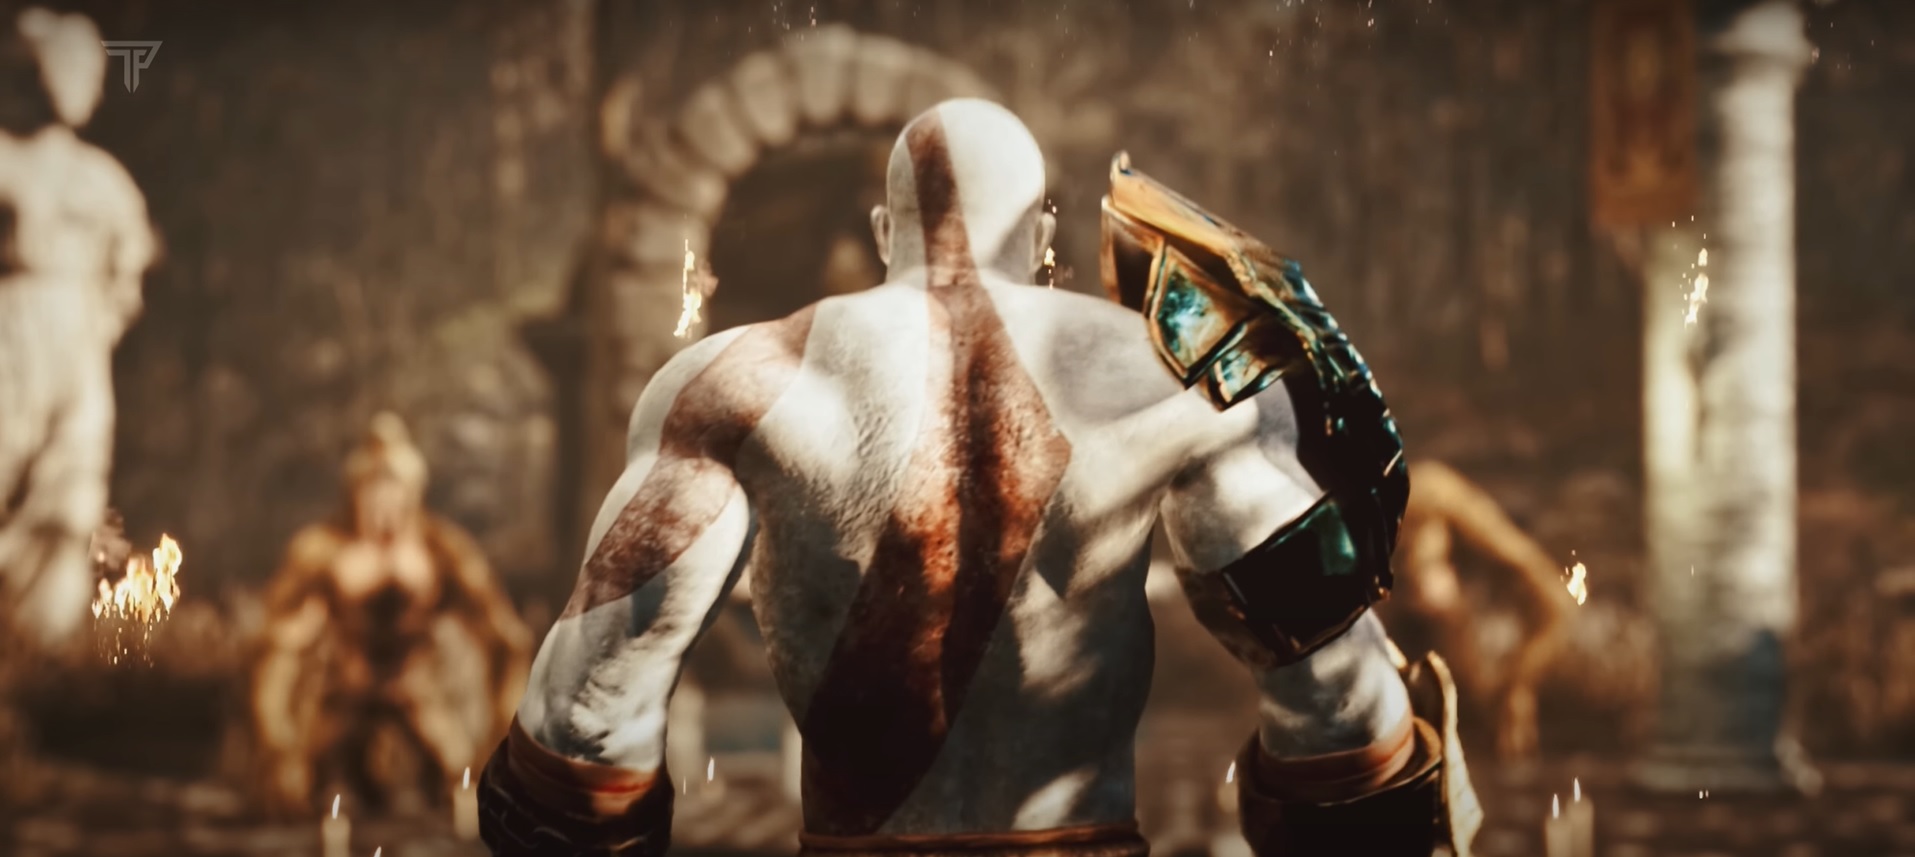 God Of War 2 Unreal Engine 5 remake trailer stuns